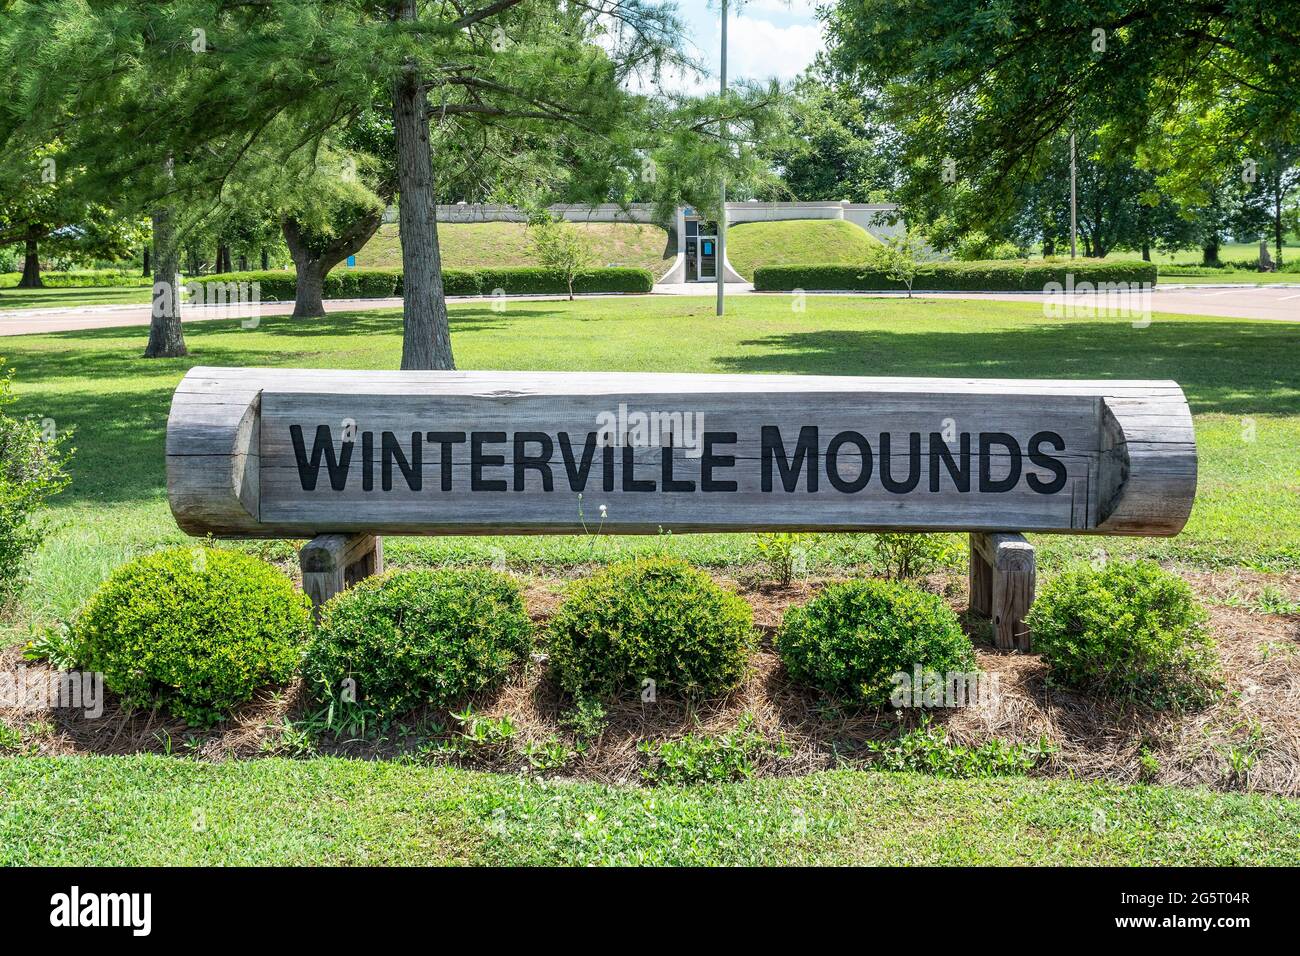 Winterville Mounds einer der größten indianischen Hügel in den Vereinigten Staaten in der Nähe von Greenville, Mississippi, USA. Stockfoto